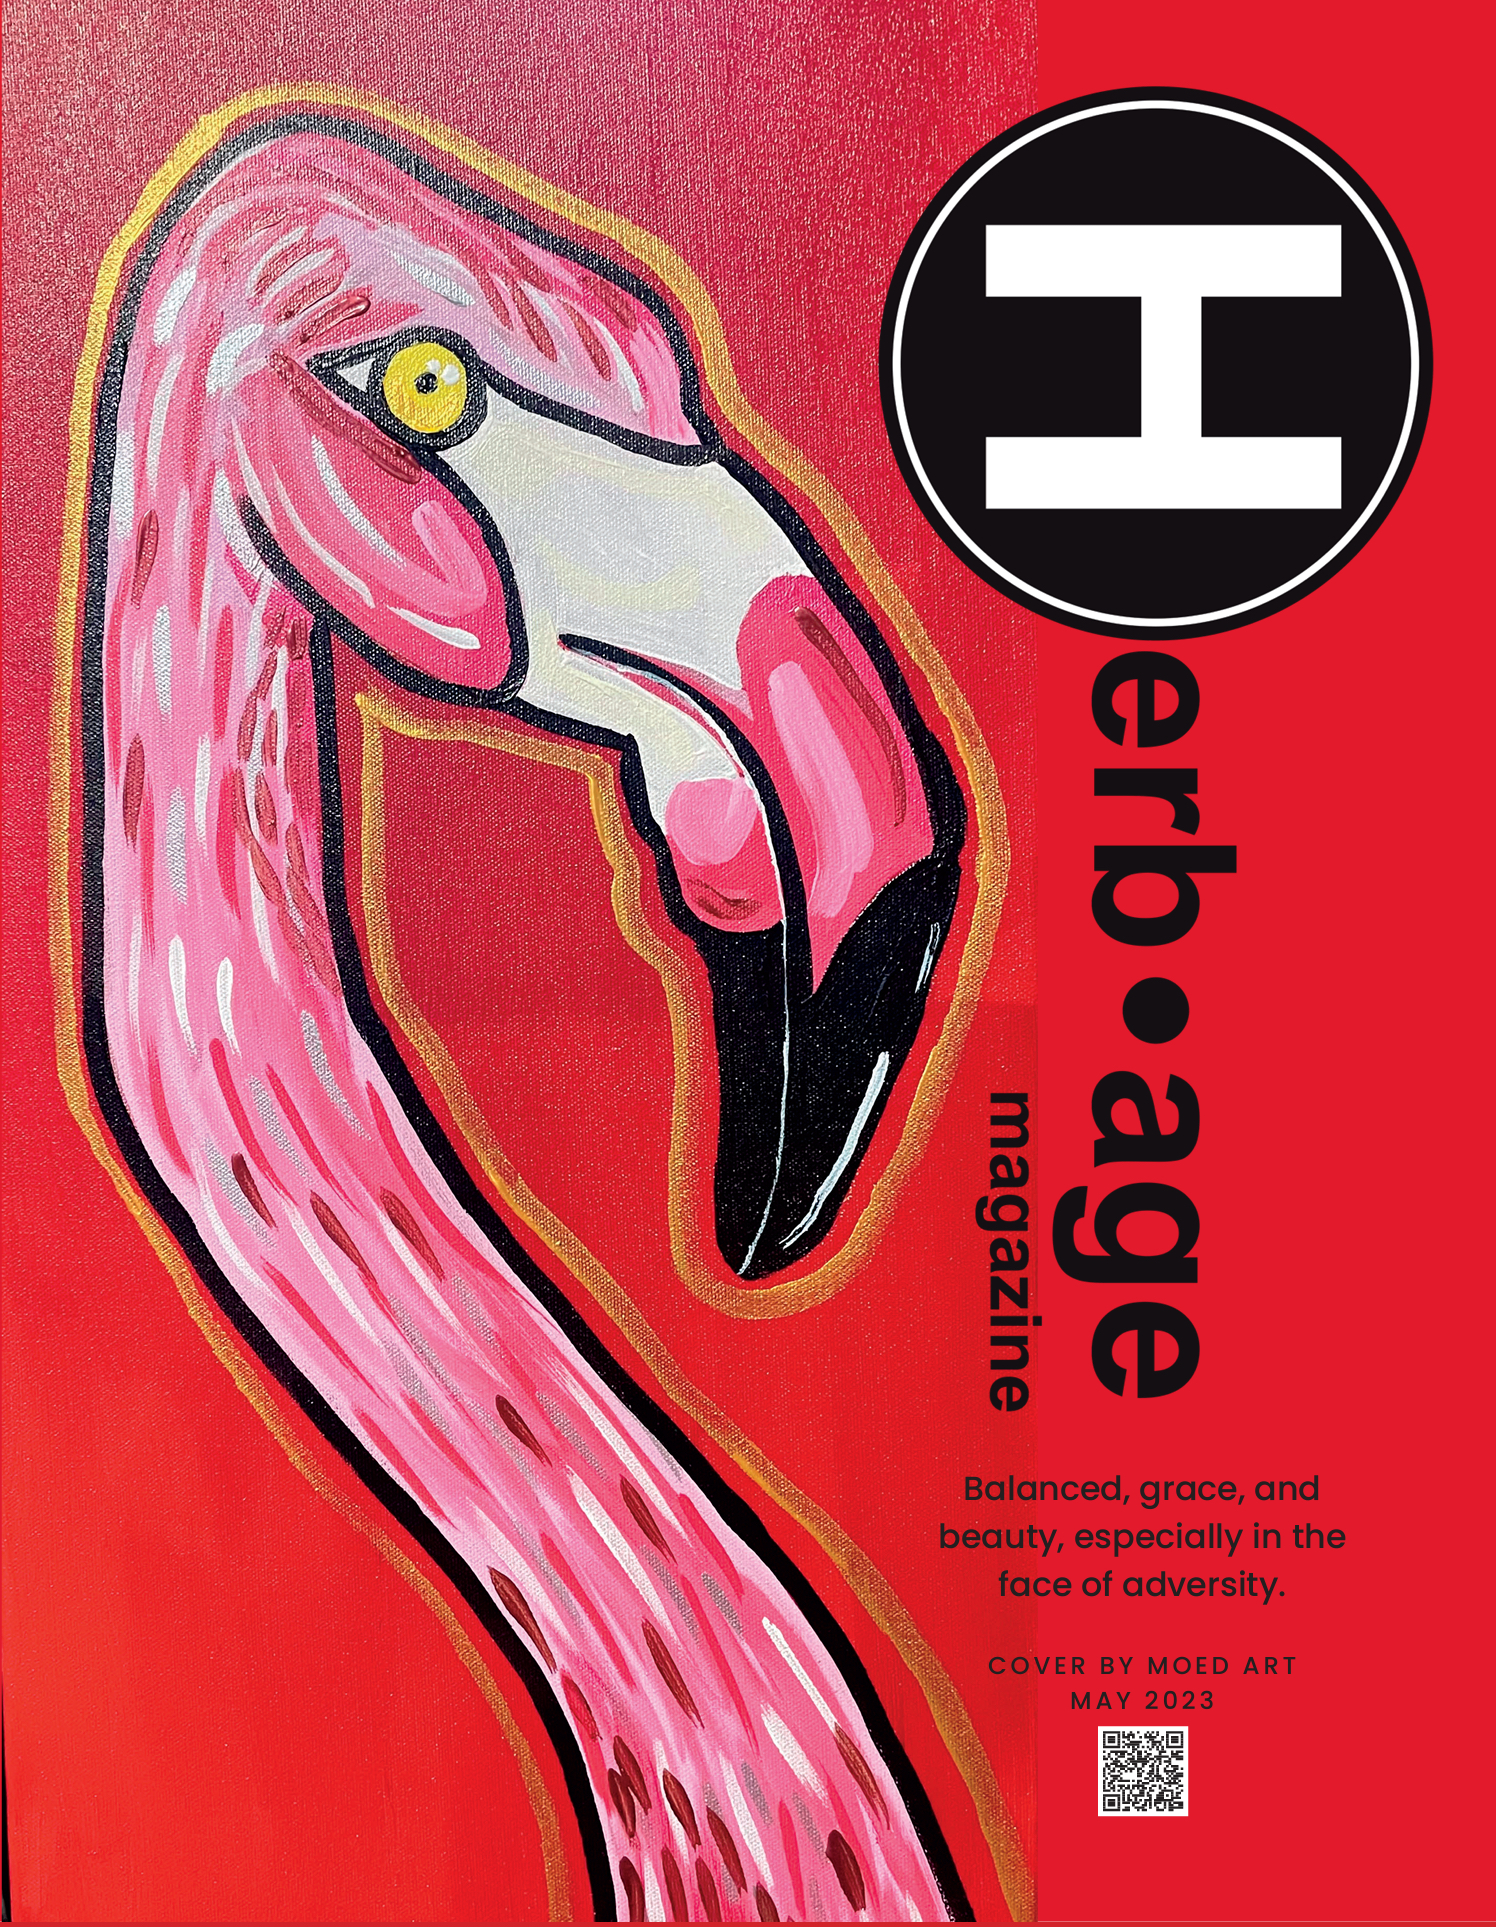 Herbage Magazine #53 May 2023